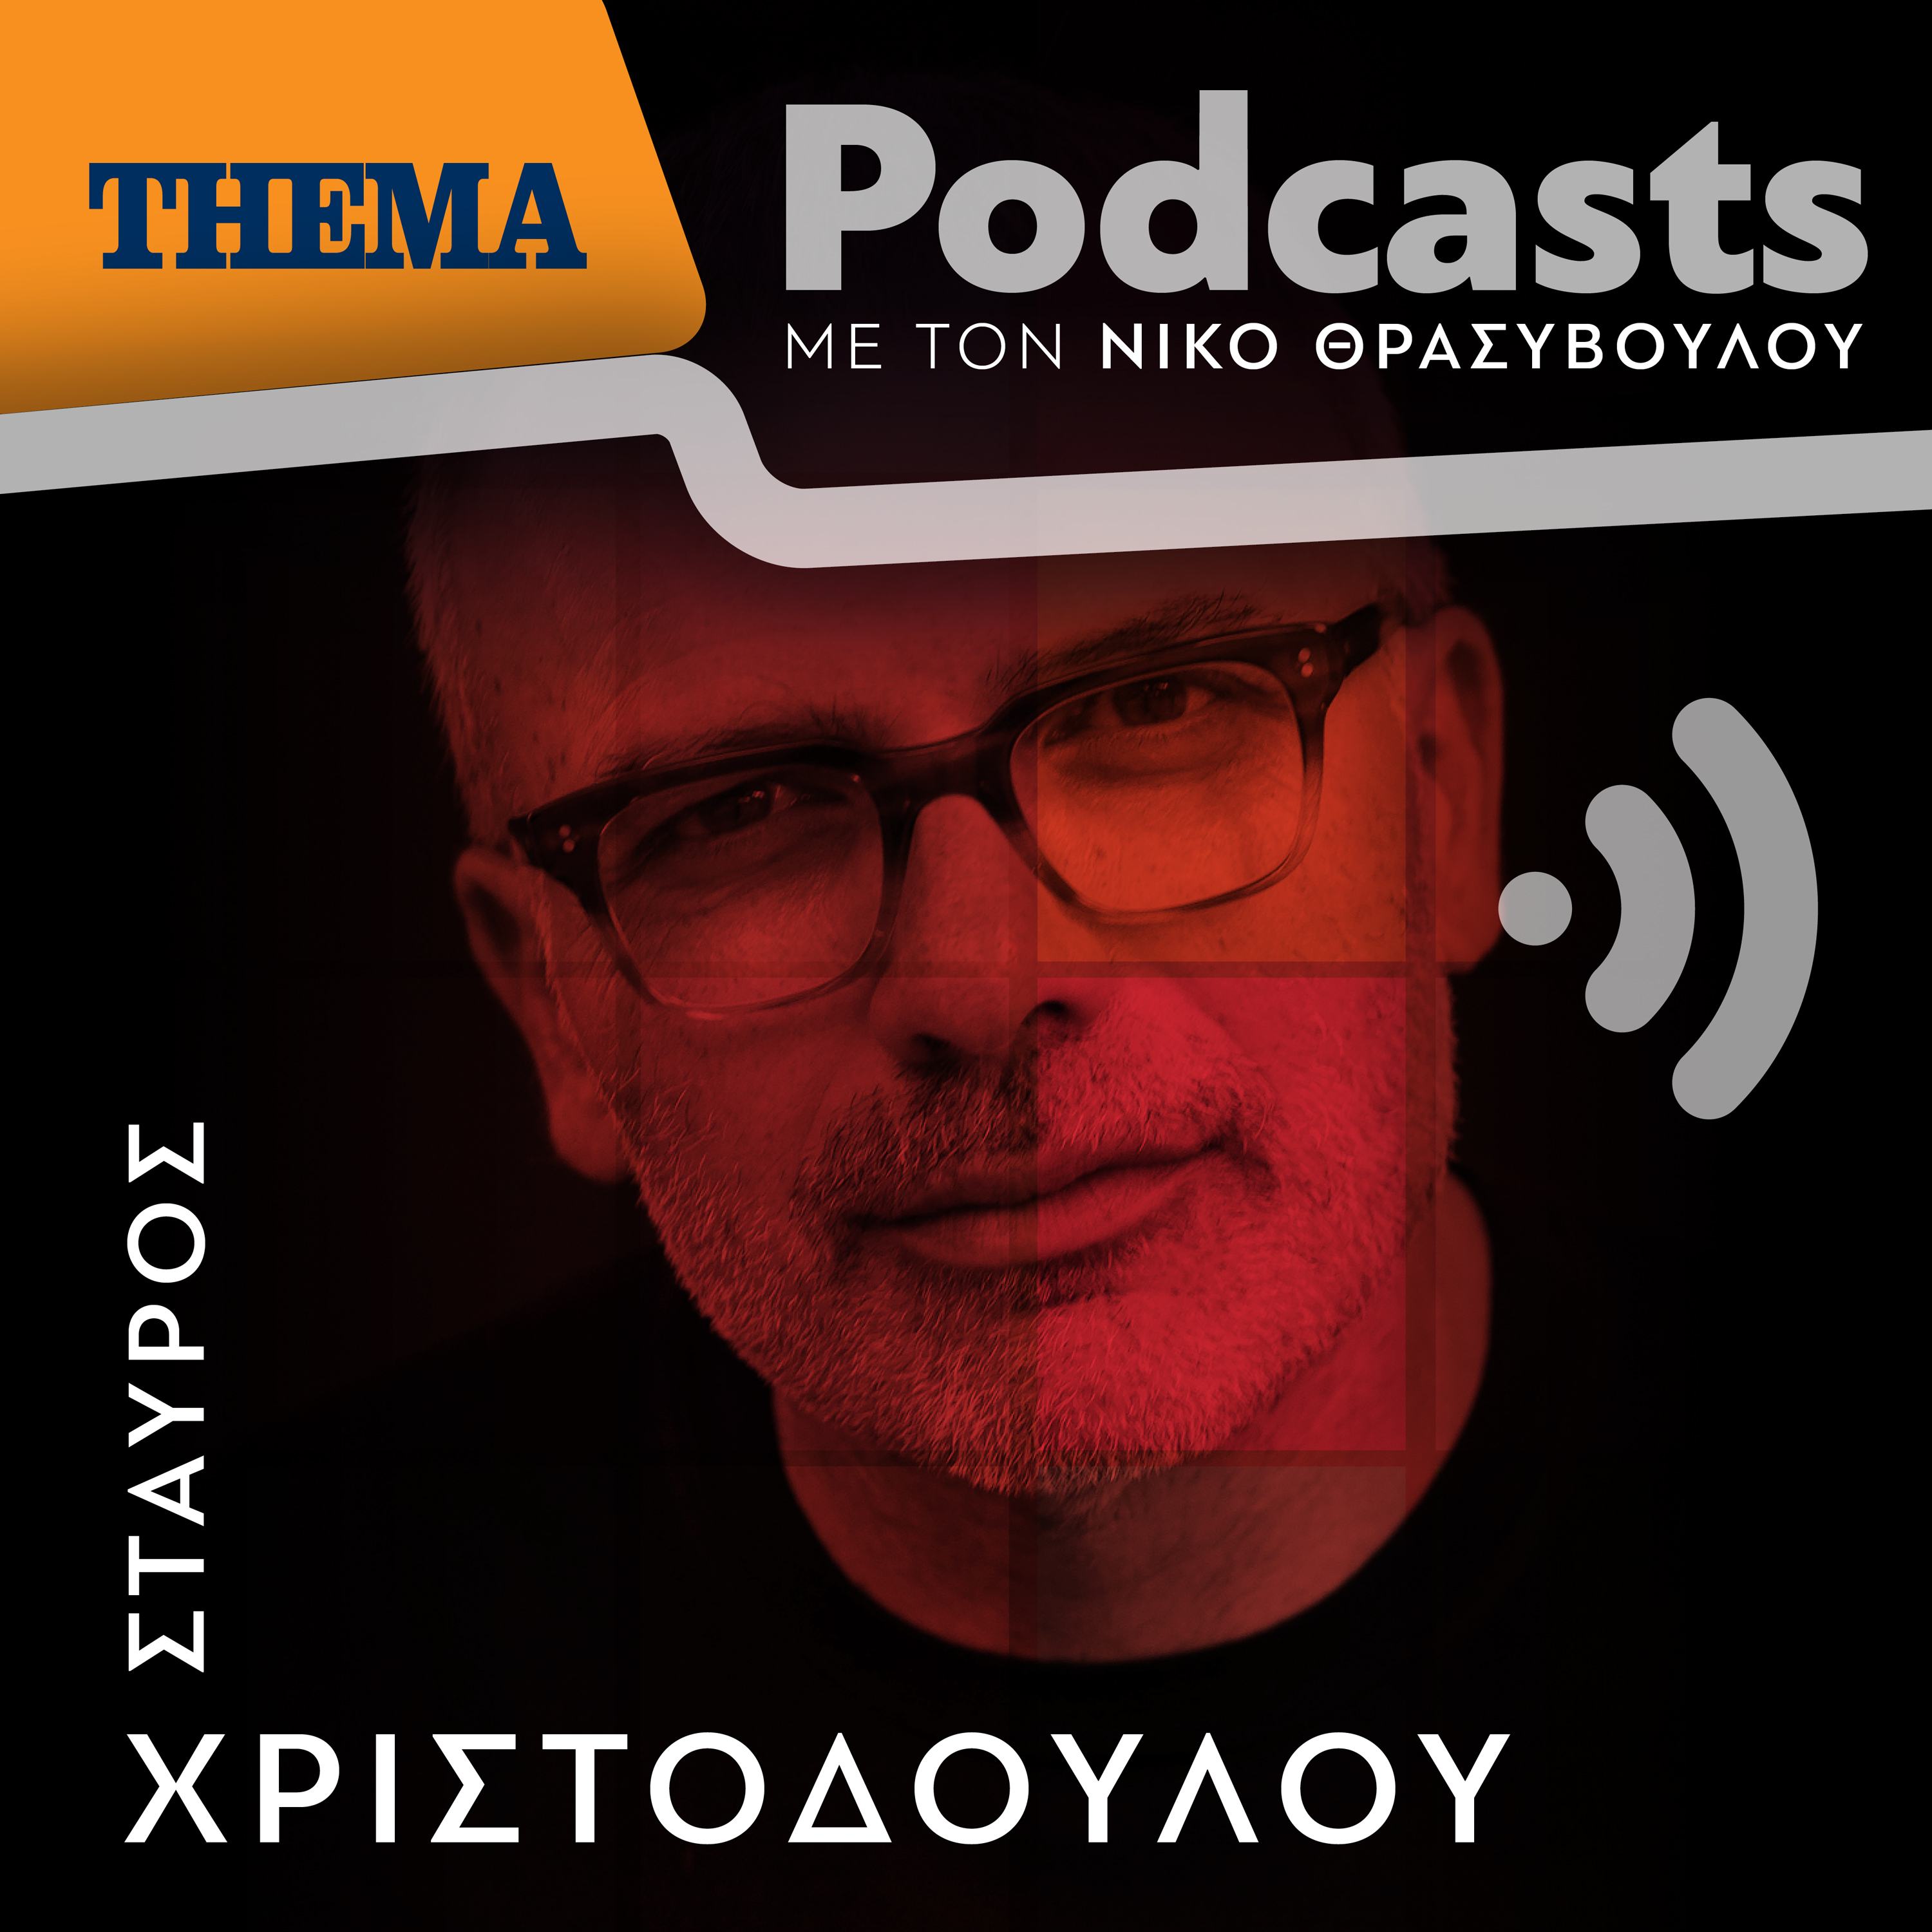 Σταύρος Χριστοδούλου: "Η μνήμη πονάει όπου και να την αγγίξεις"